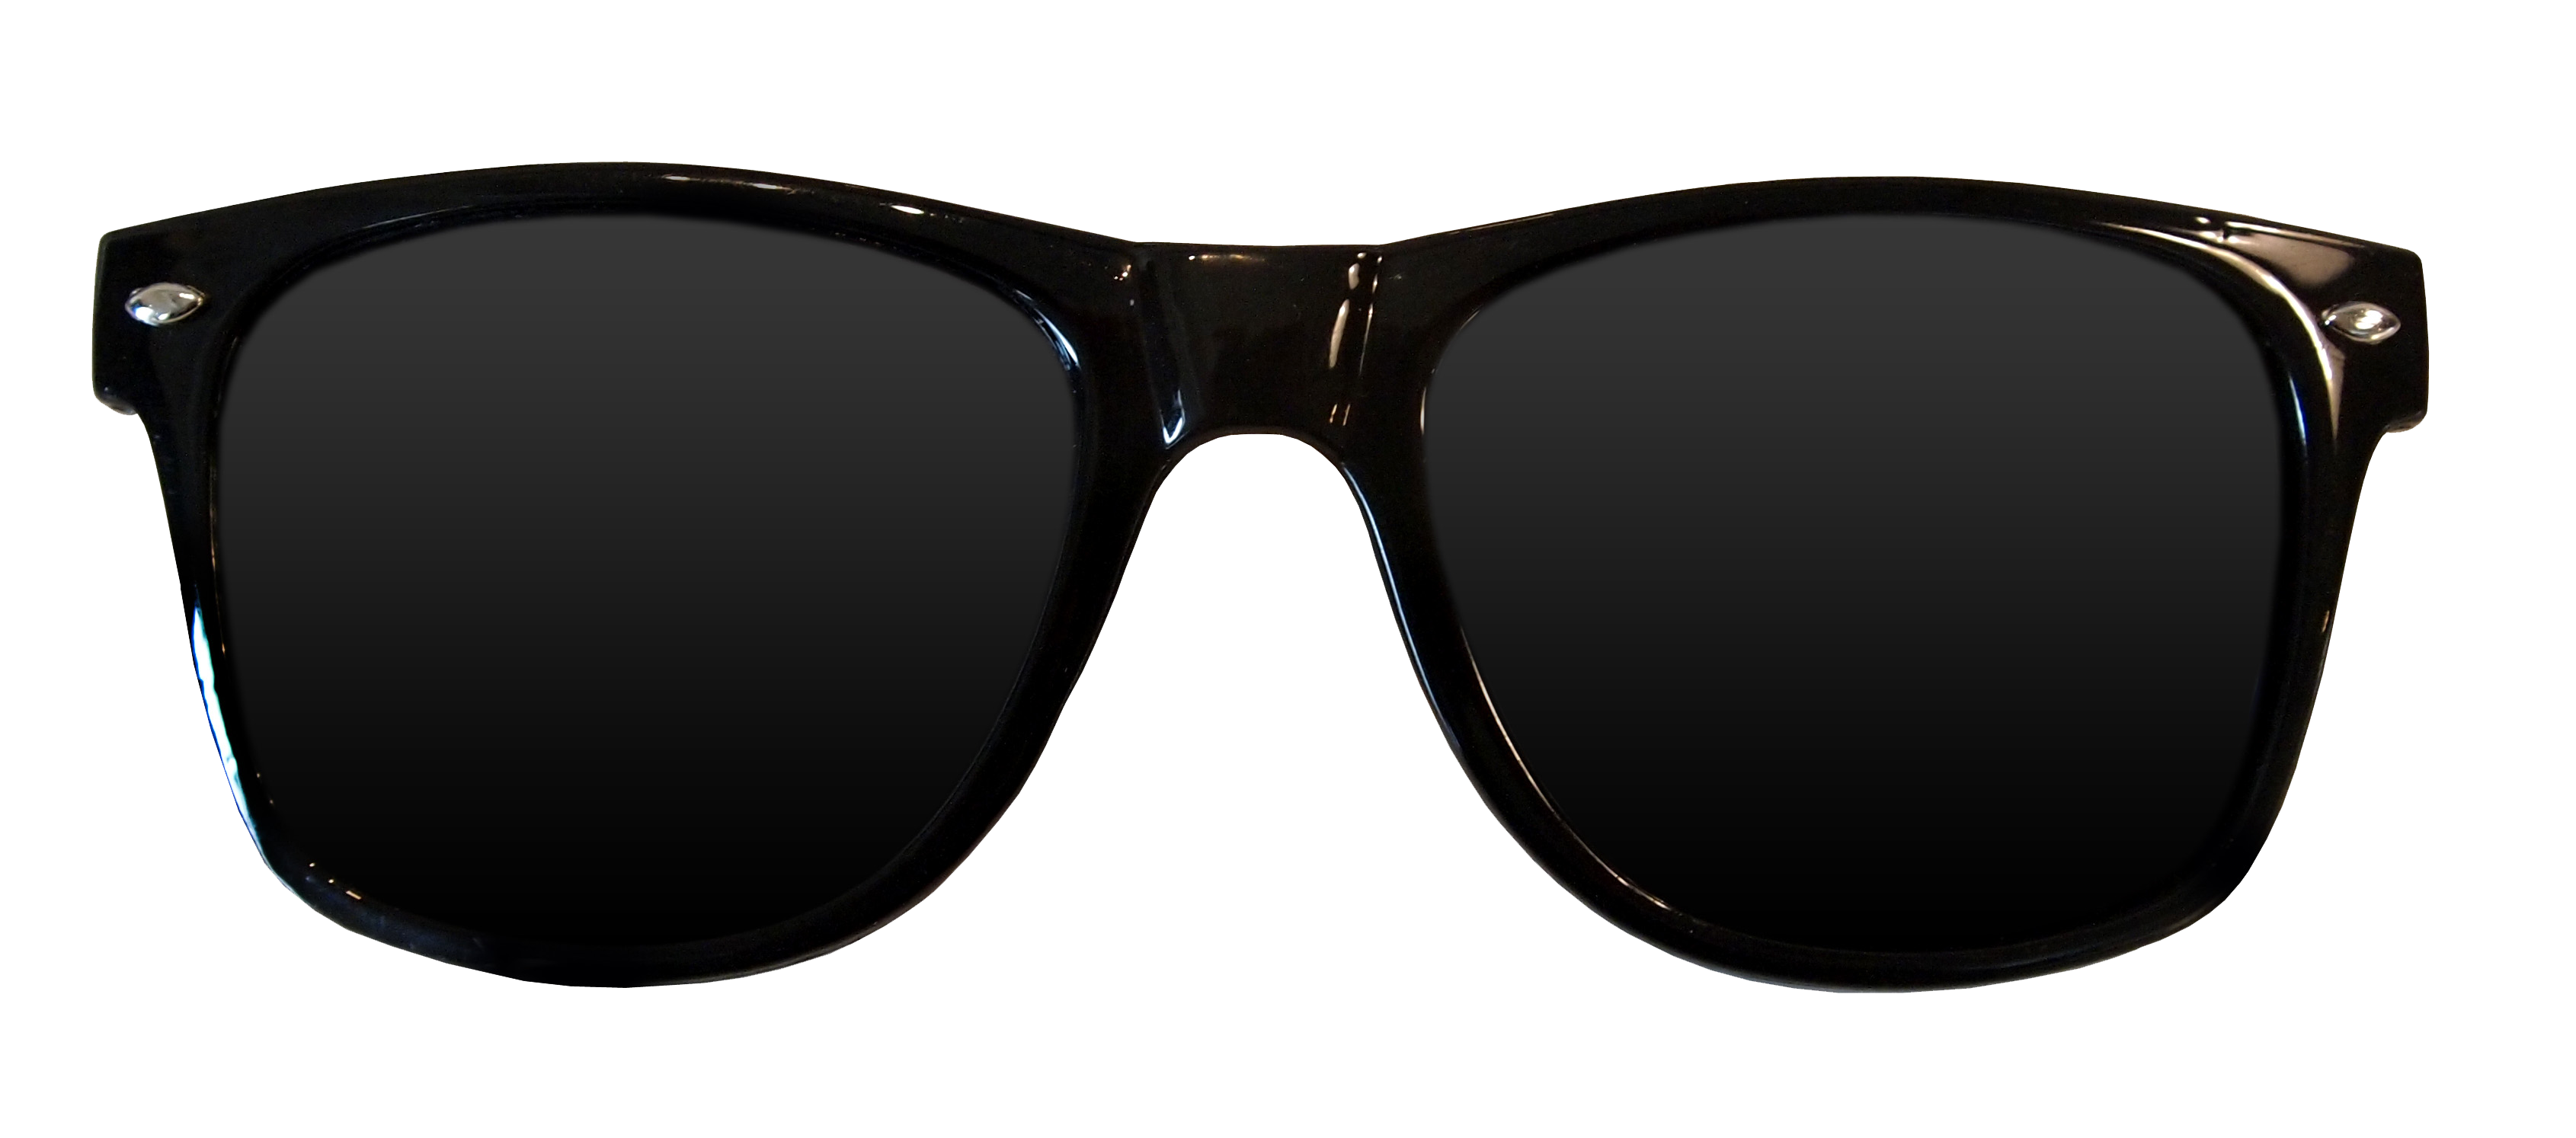 Kacamata hitam PNG Gambar Transparan